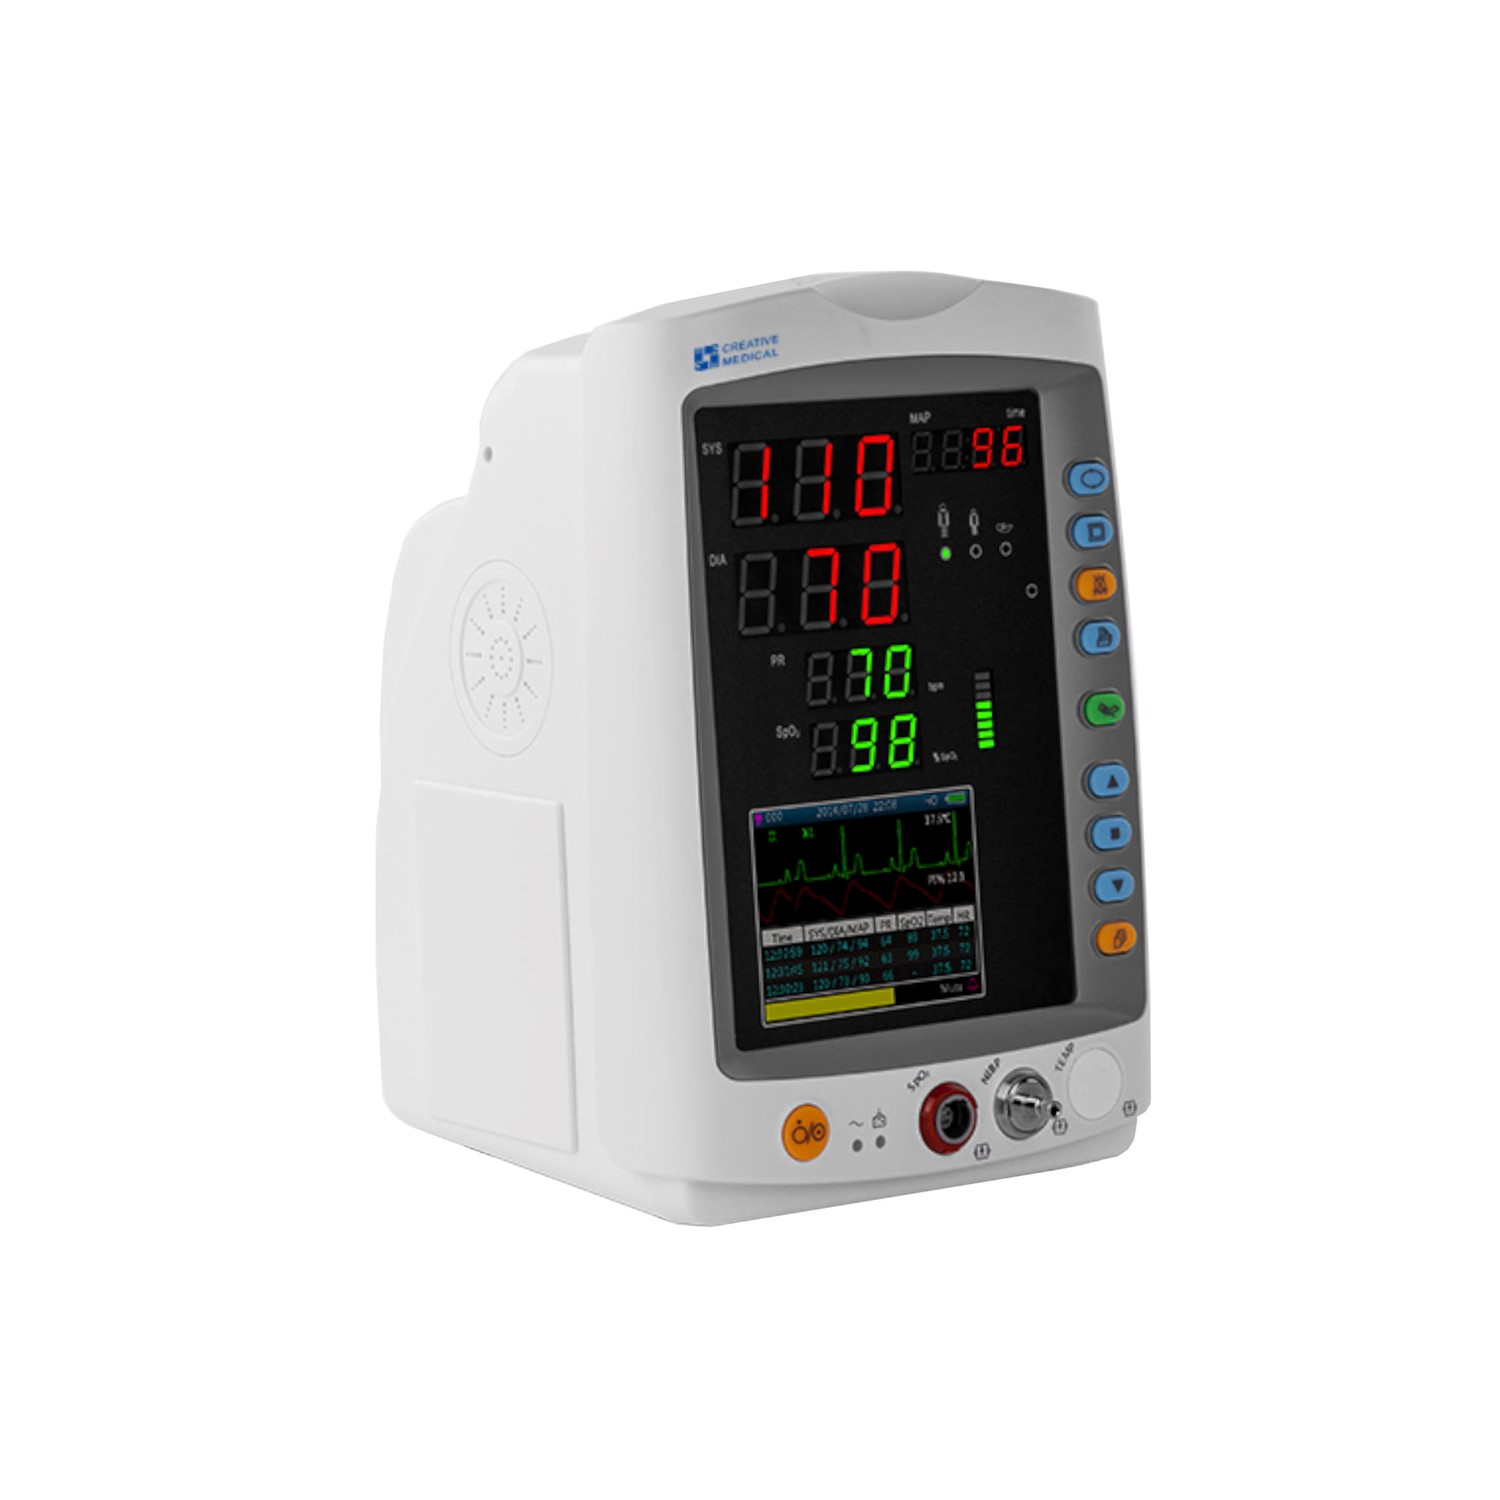 Μόνιτορ ασθενή vital sign PC-900Pro με SpO2, PR, NIBP, TEMP